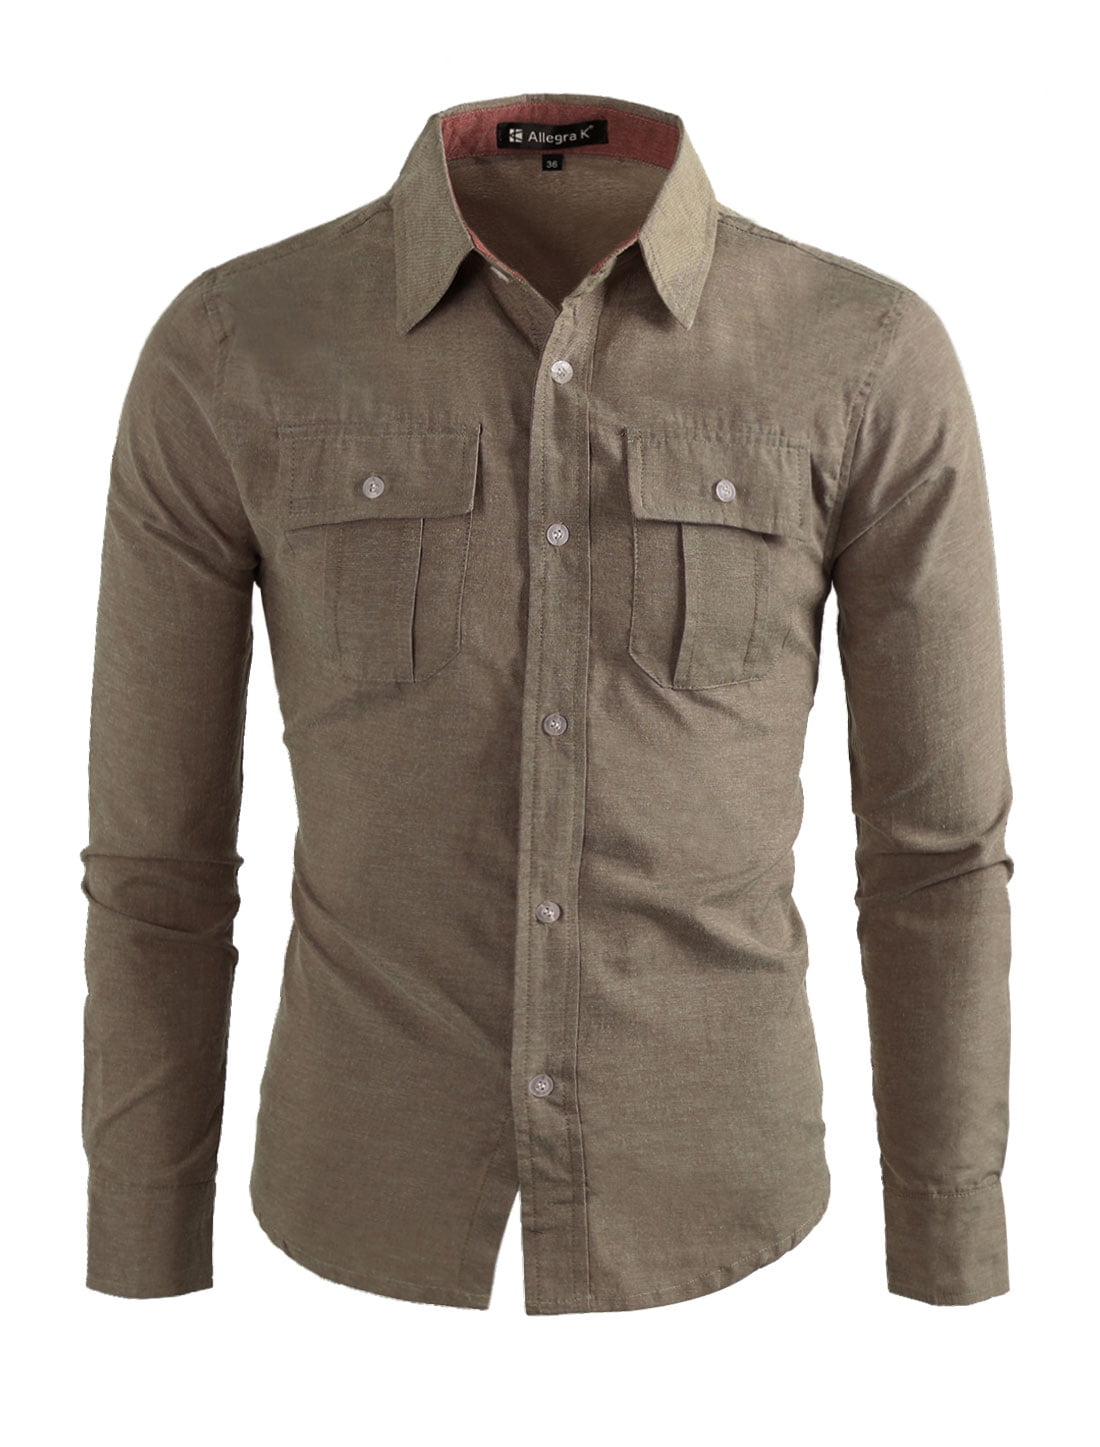 Unique Bargains Men's Chest Flap Pockets Long Sleeves Button Down Shirt ...